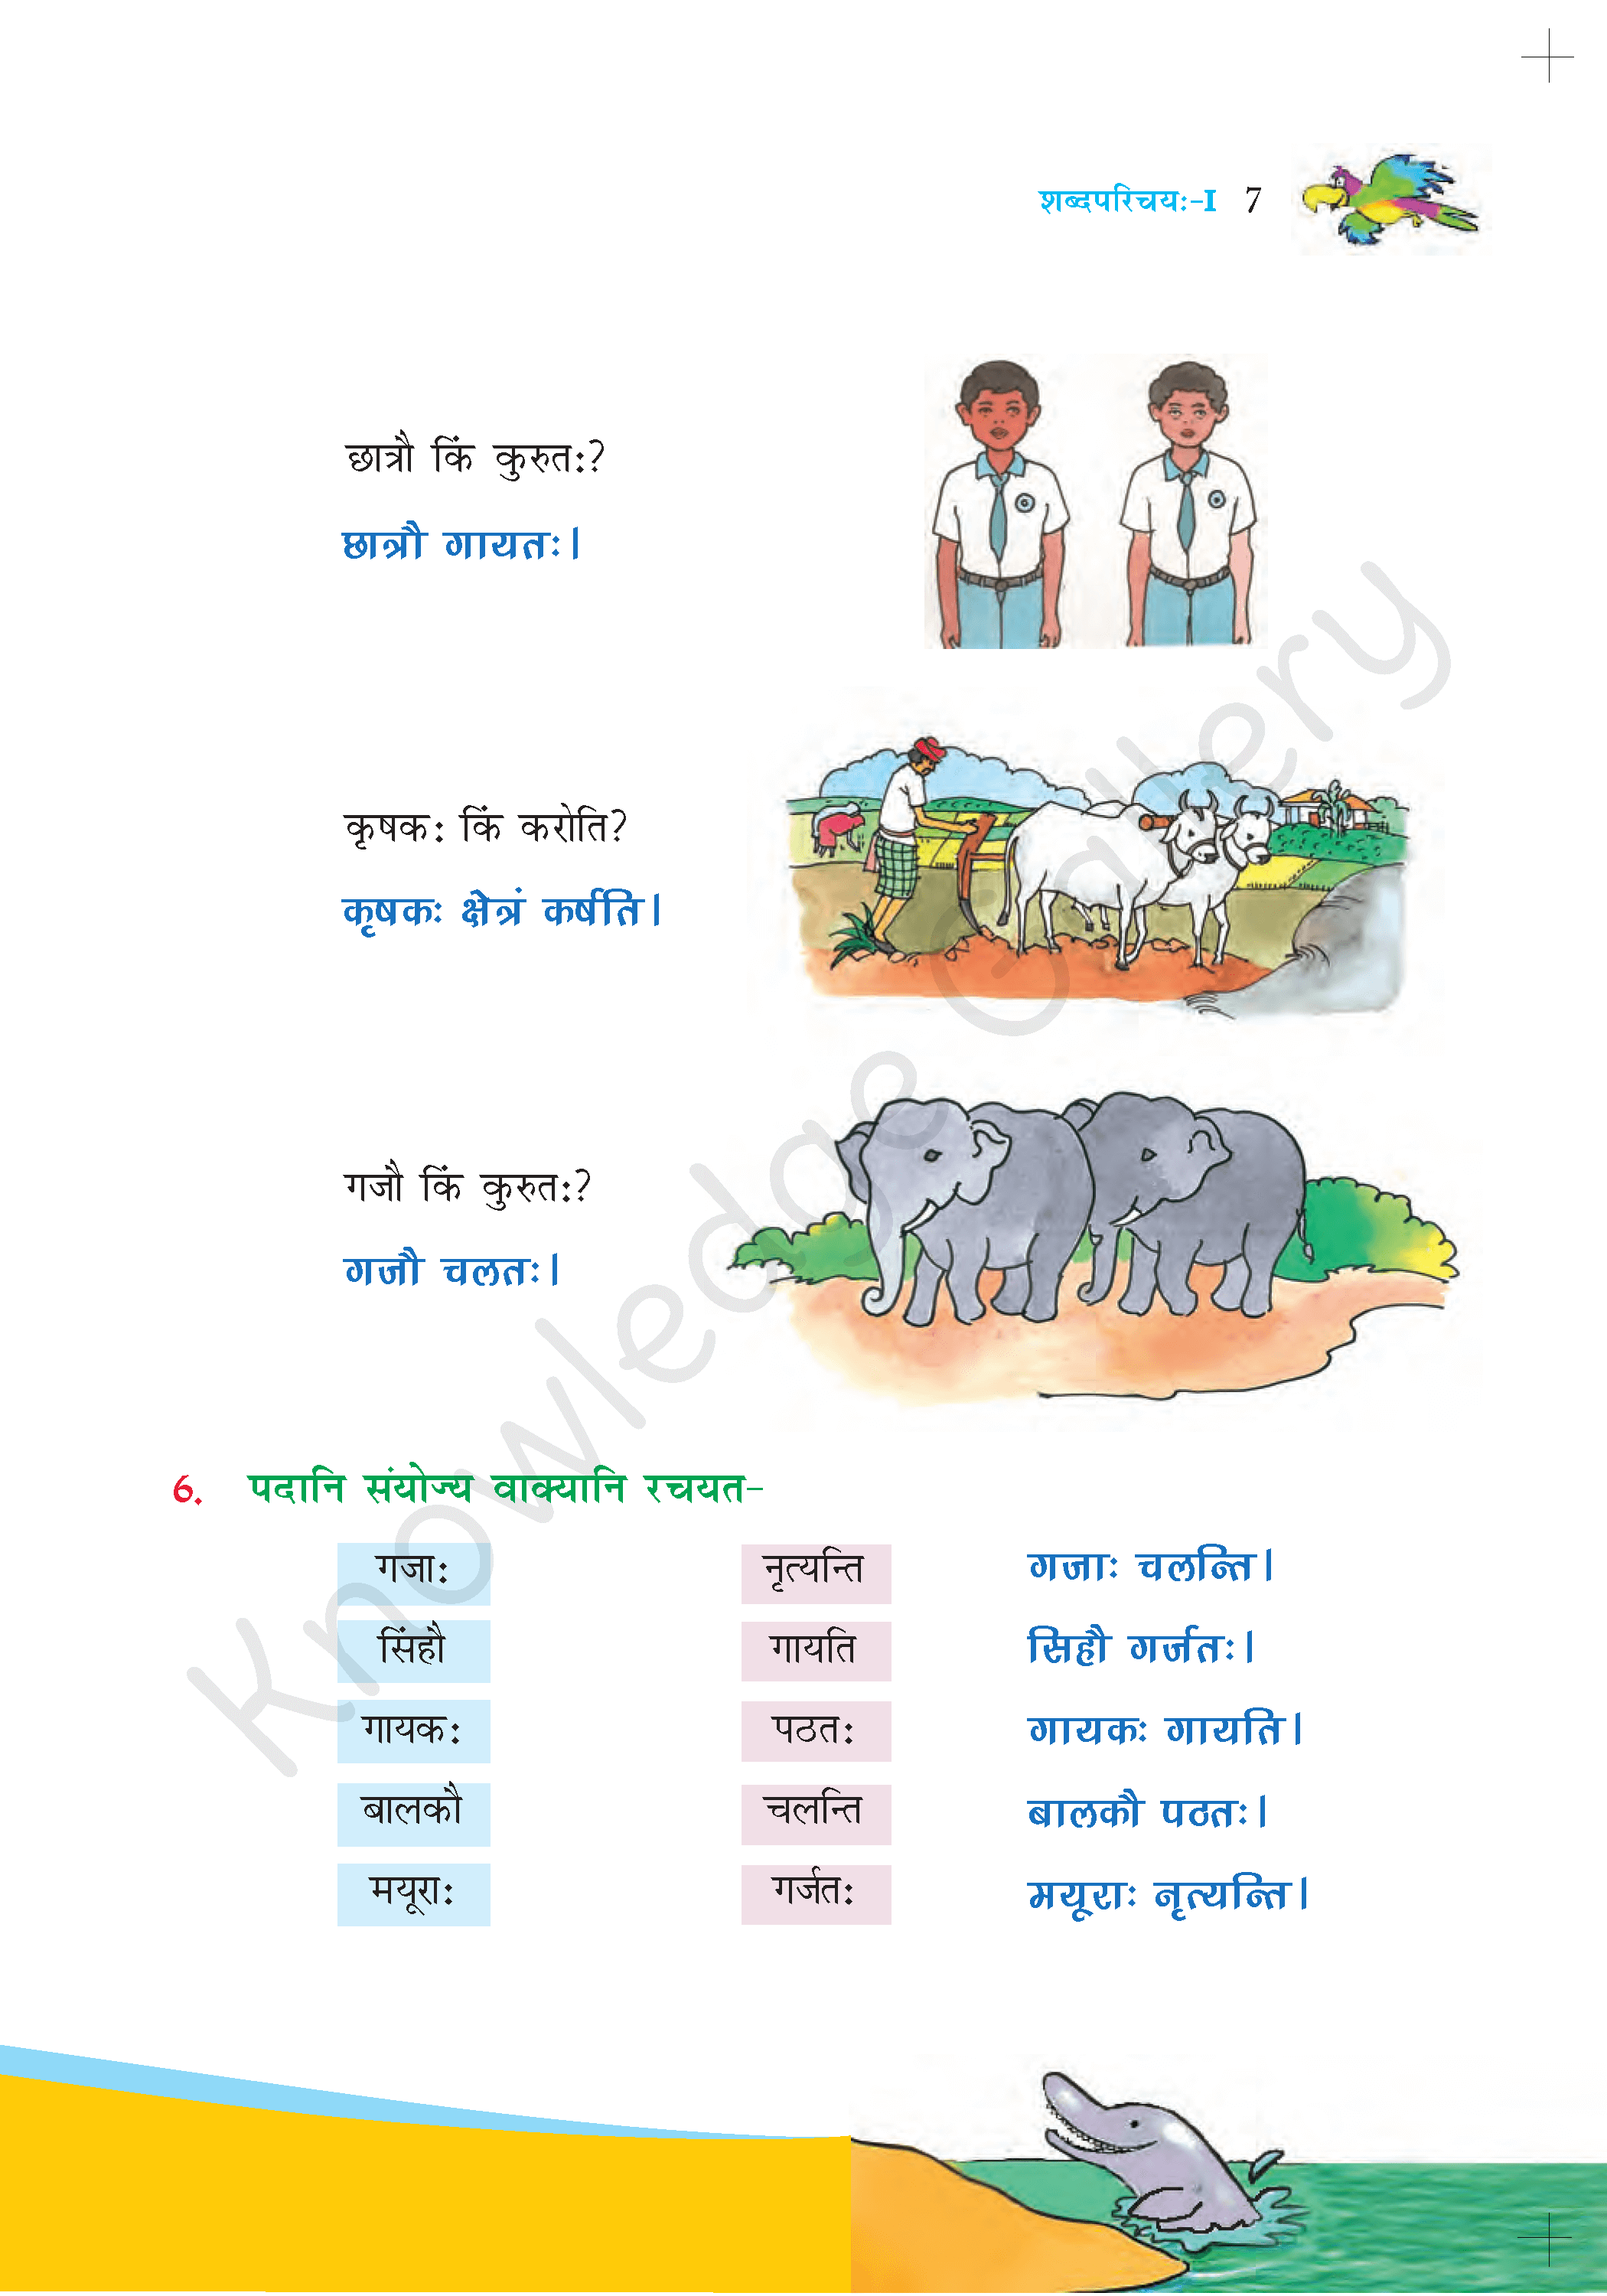 NCERT Solution For Class 6 Sanskrit Chapter 1 part 7